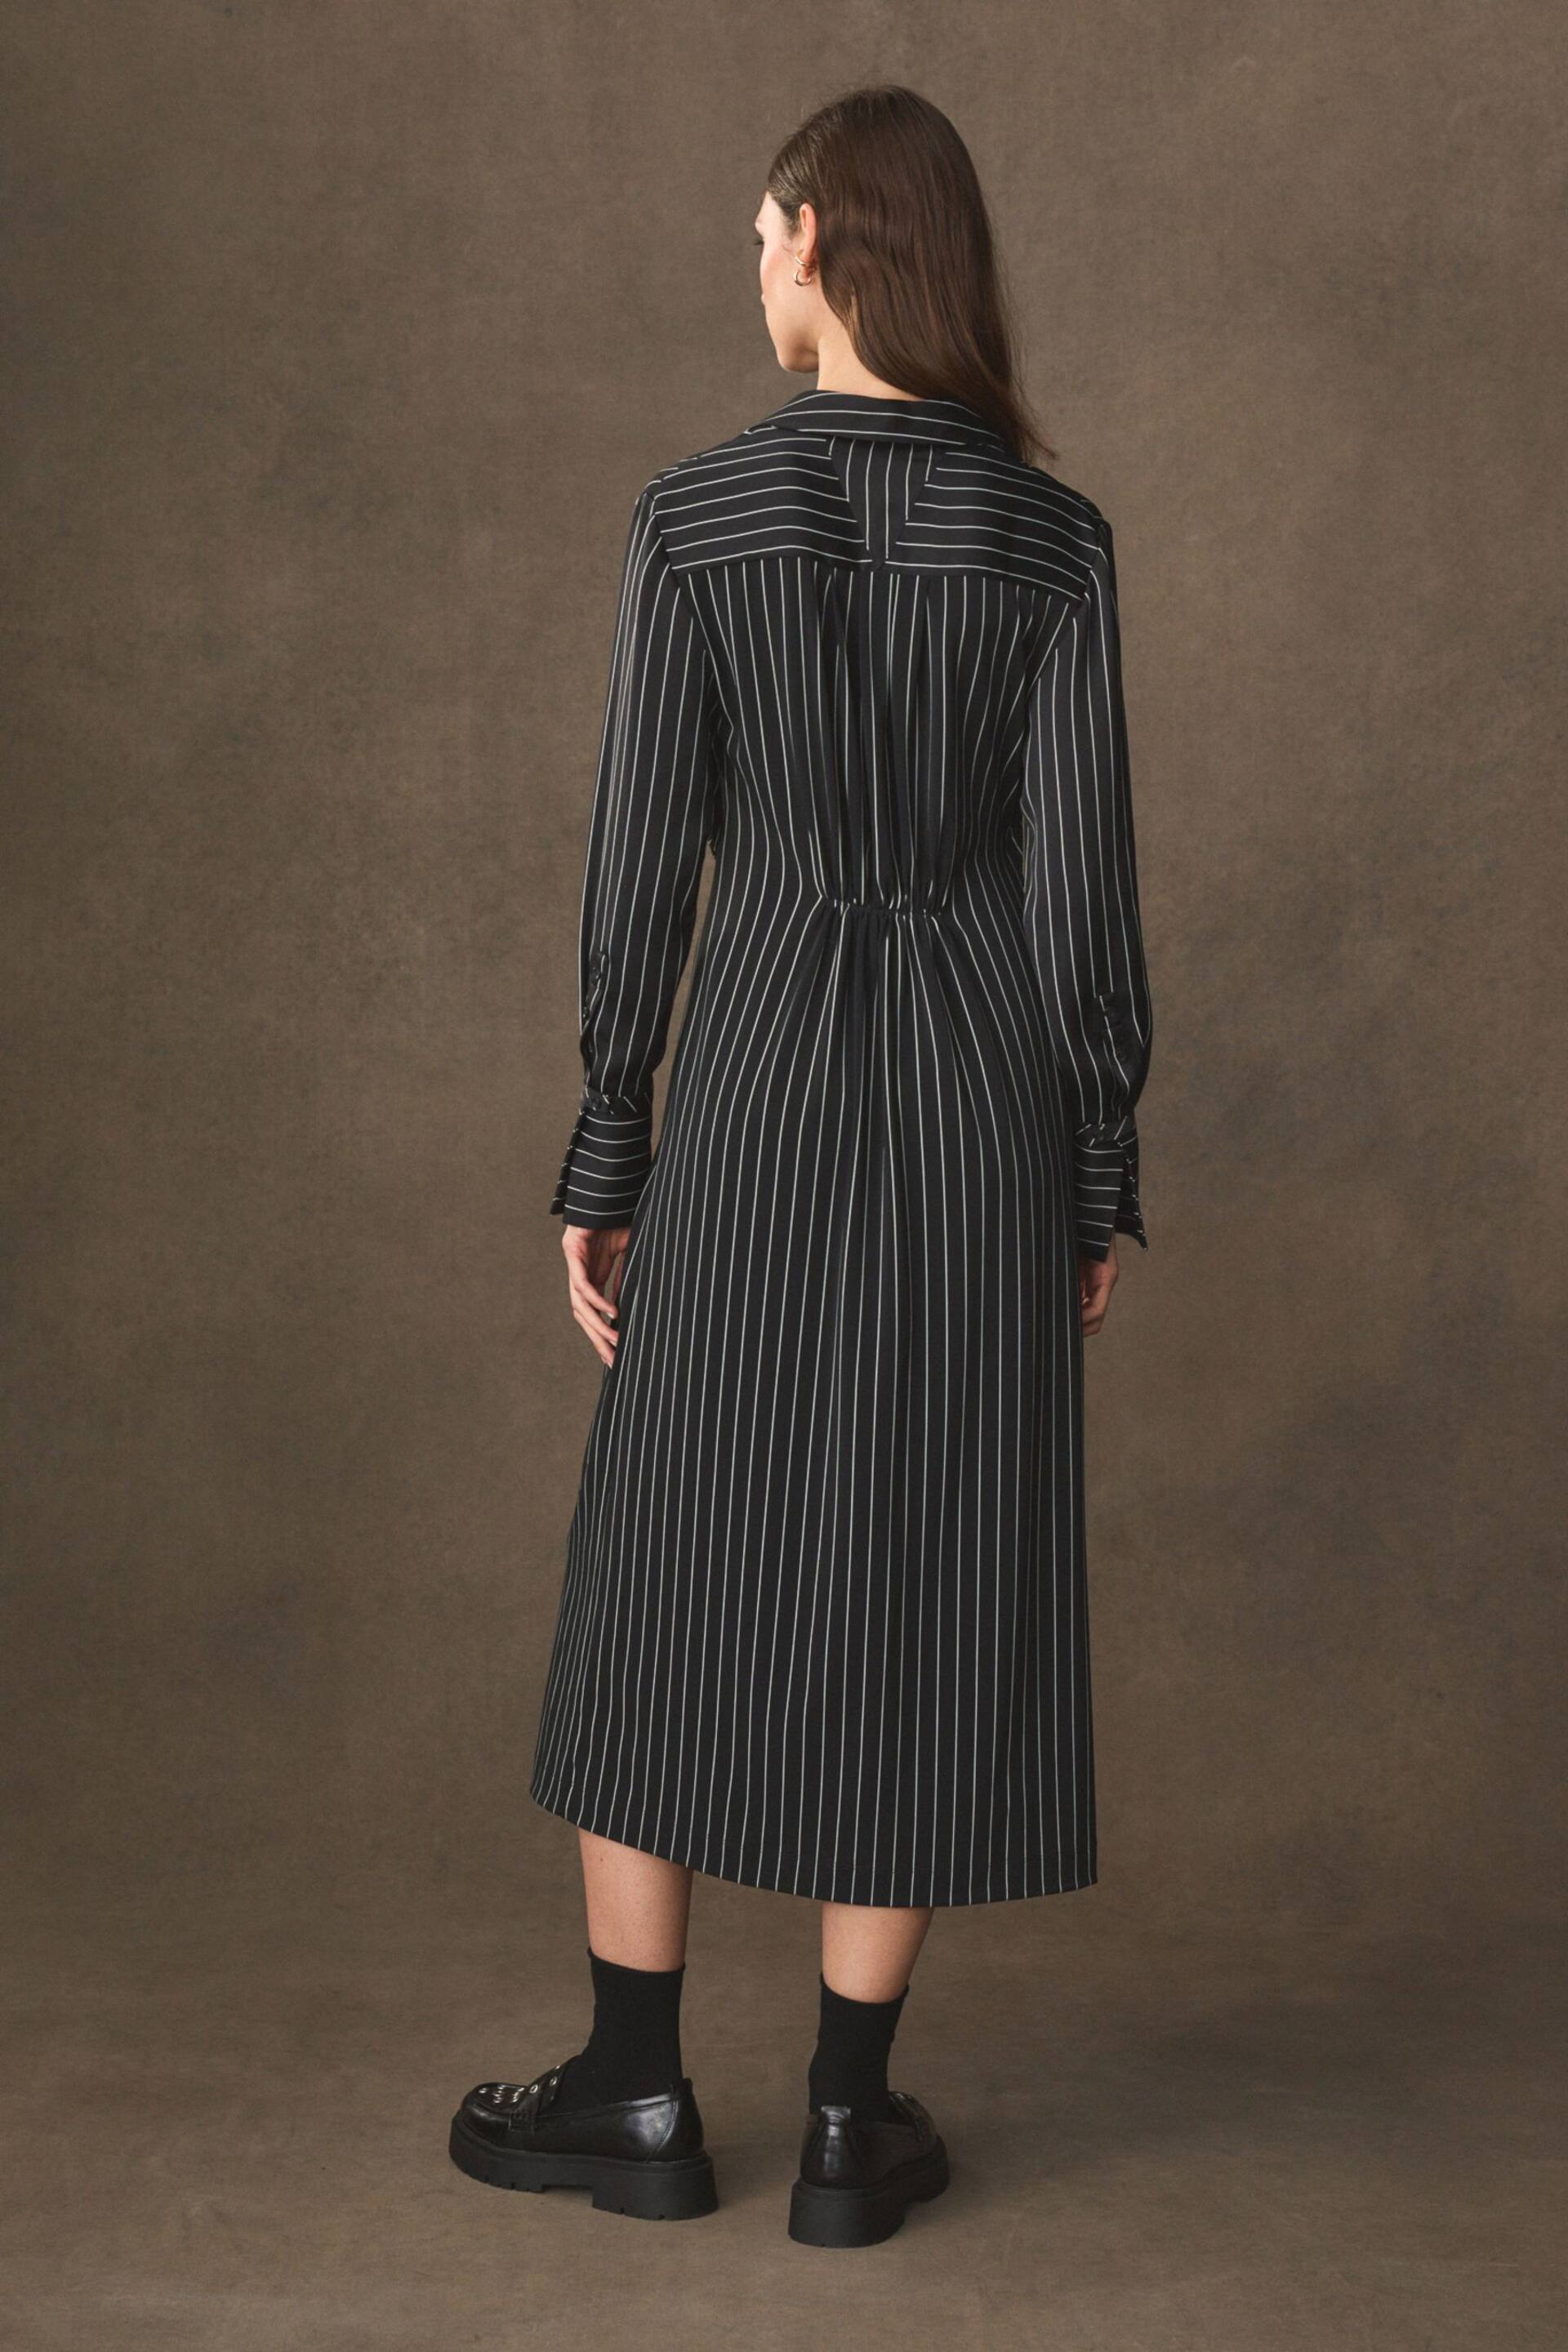 Black/White Stripe Asymmetric Pinstripe Shirt Dress - Image 4 of 7